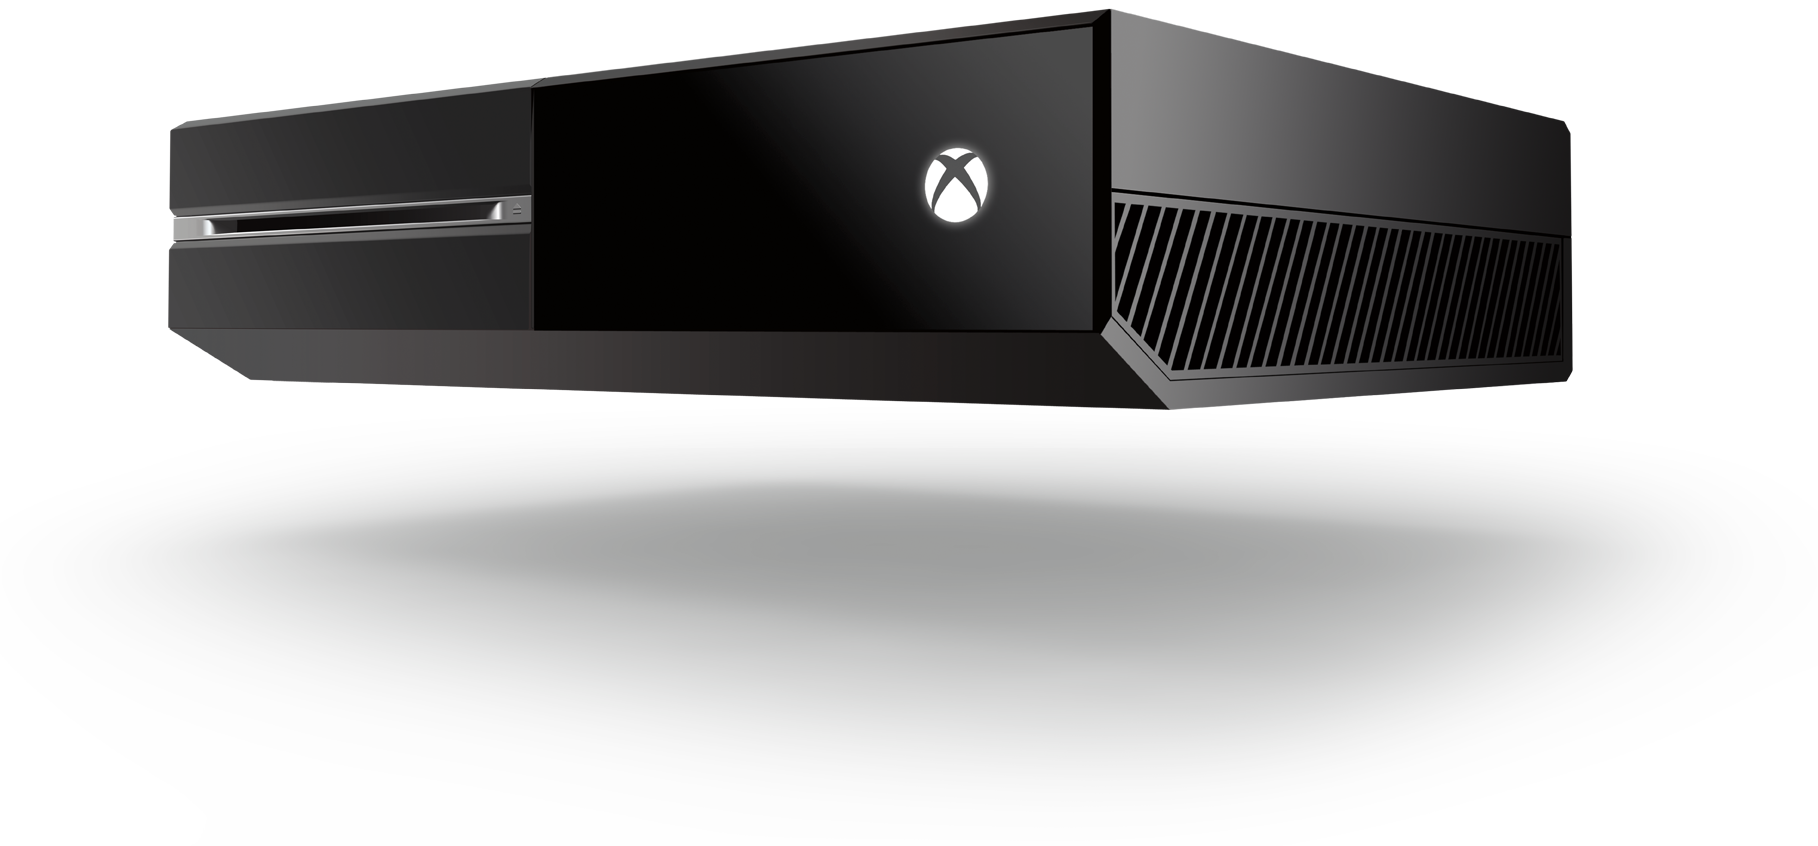 På Xbox One matar du disken rett inn i maskina.Foto: Microsoft